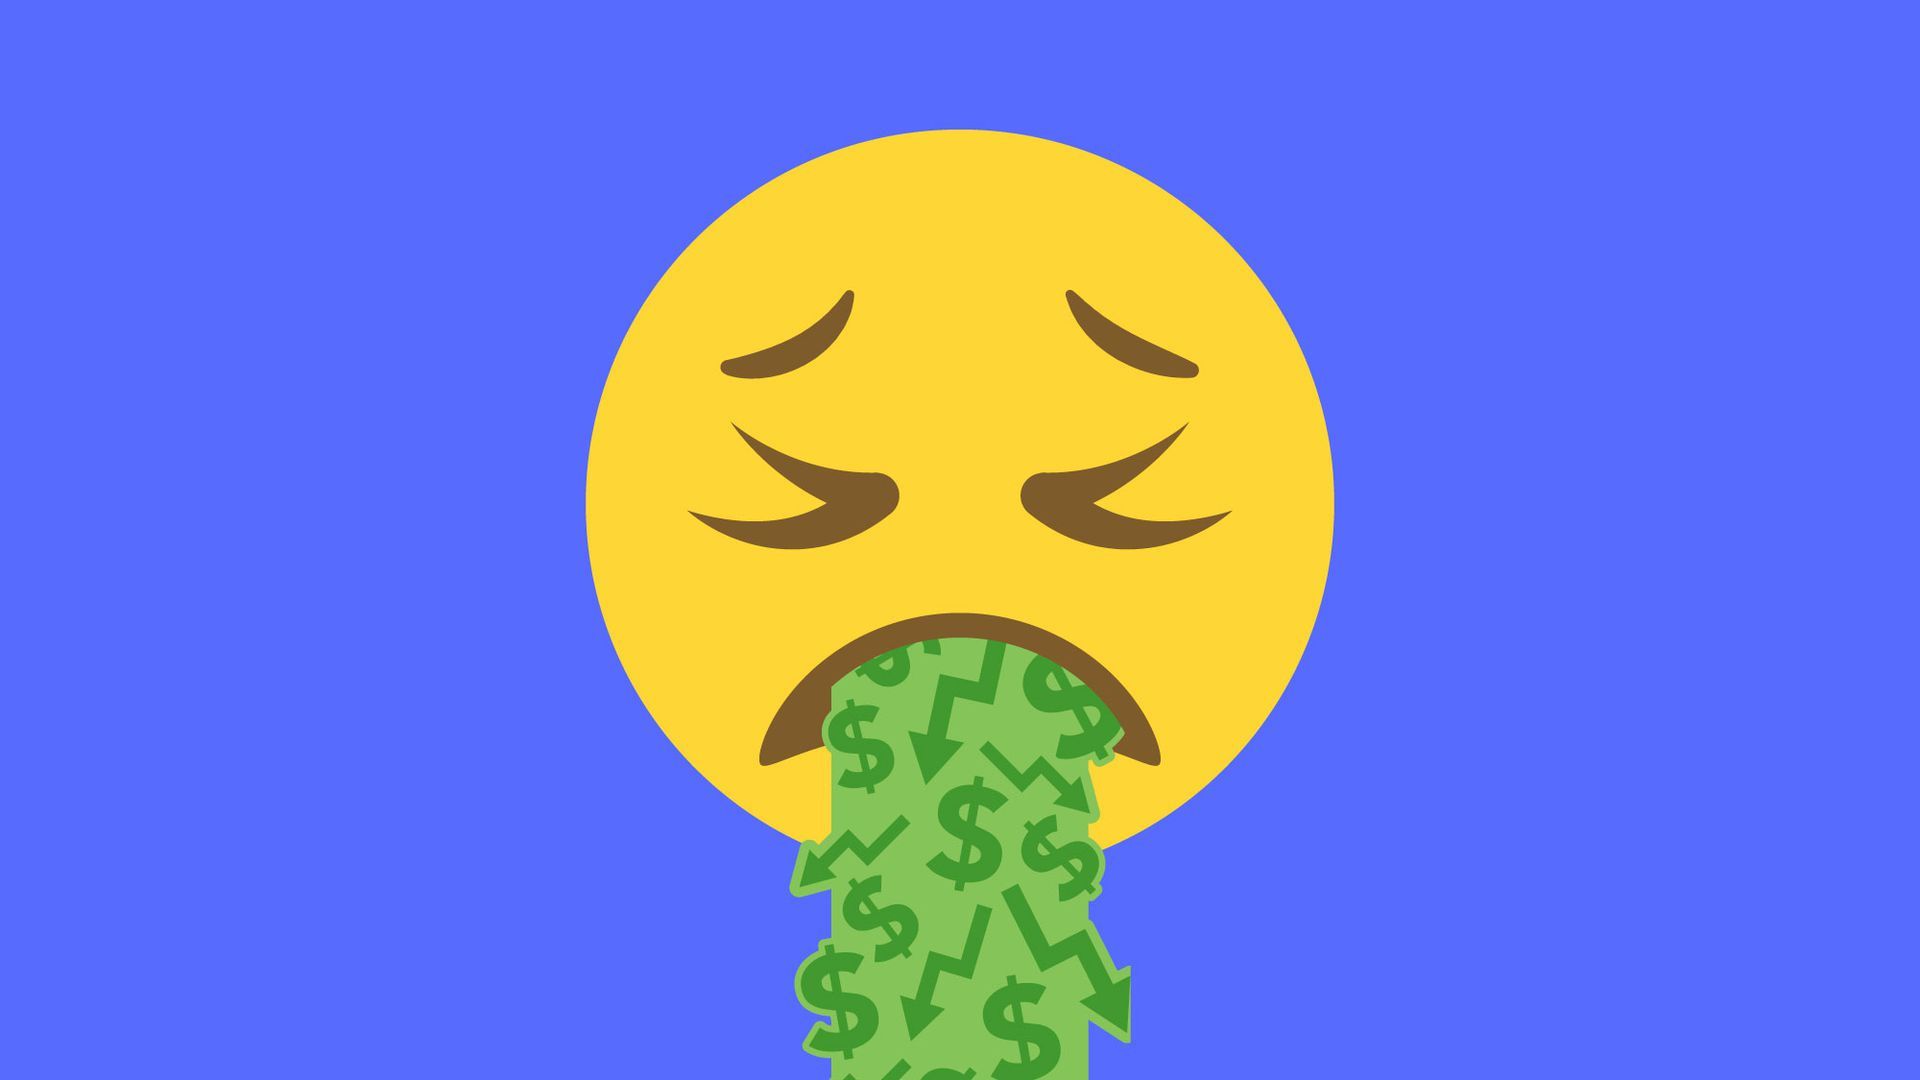 An emoji throwing up dollar signs.